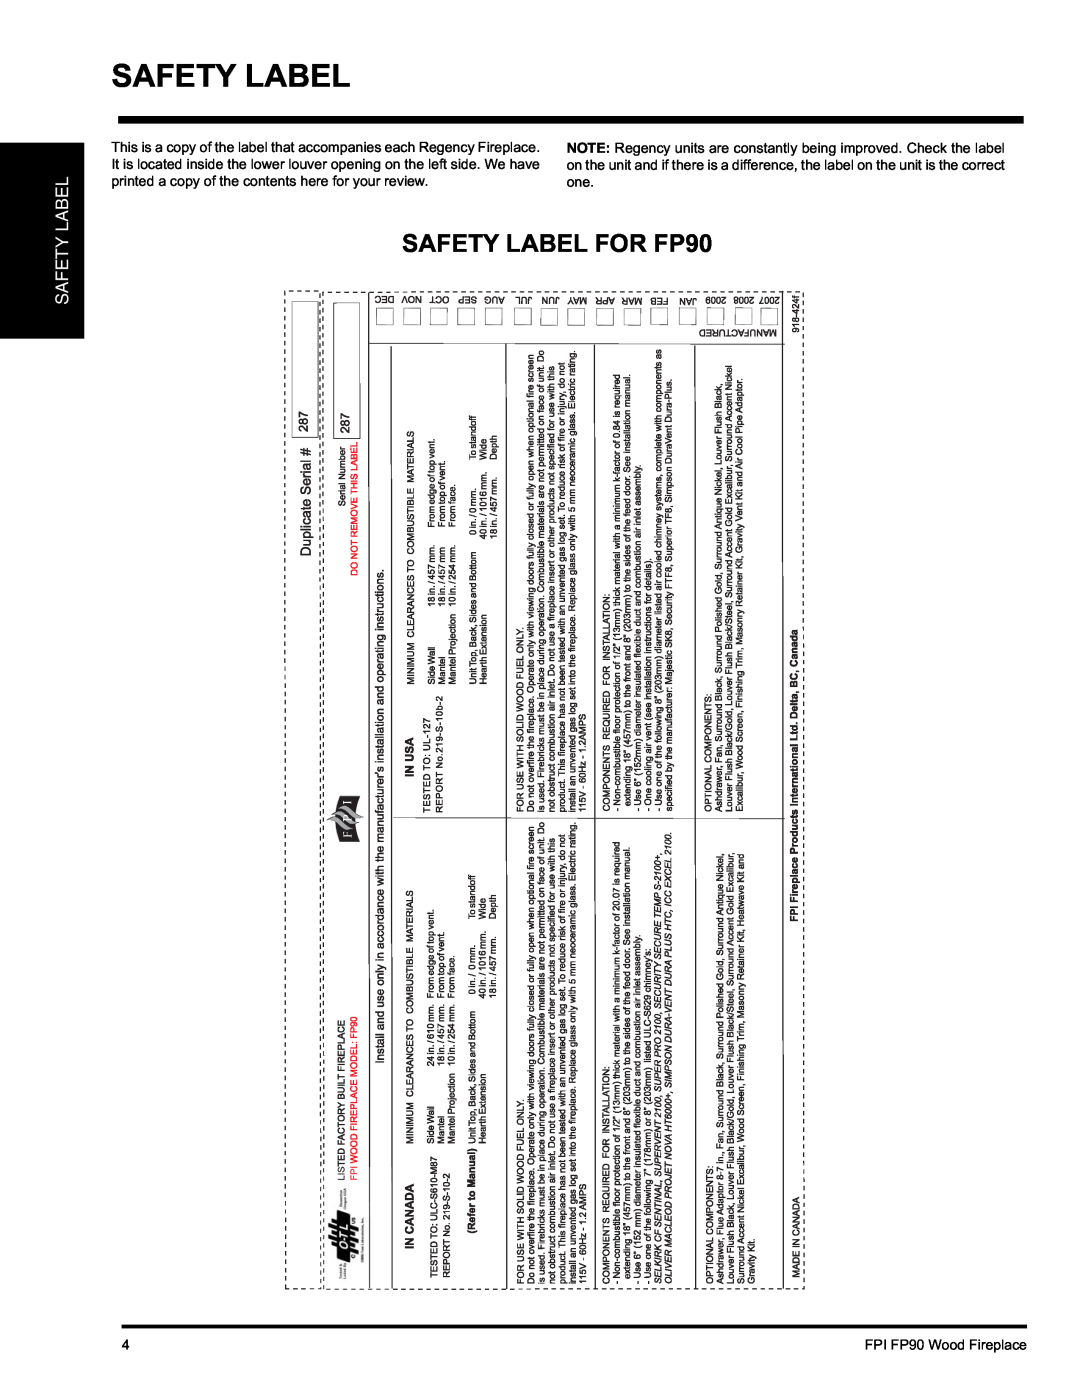 Regency installation manual Safety Label, SAFETY LABEL FOR FP90 